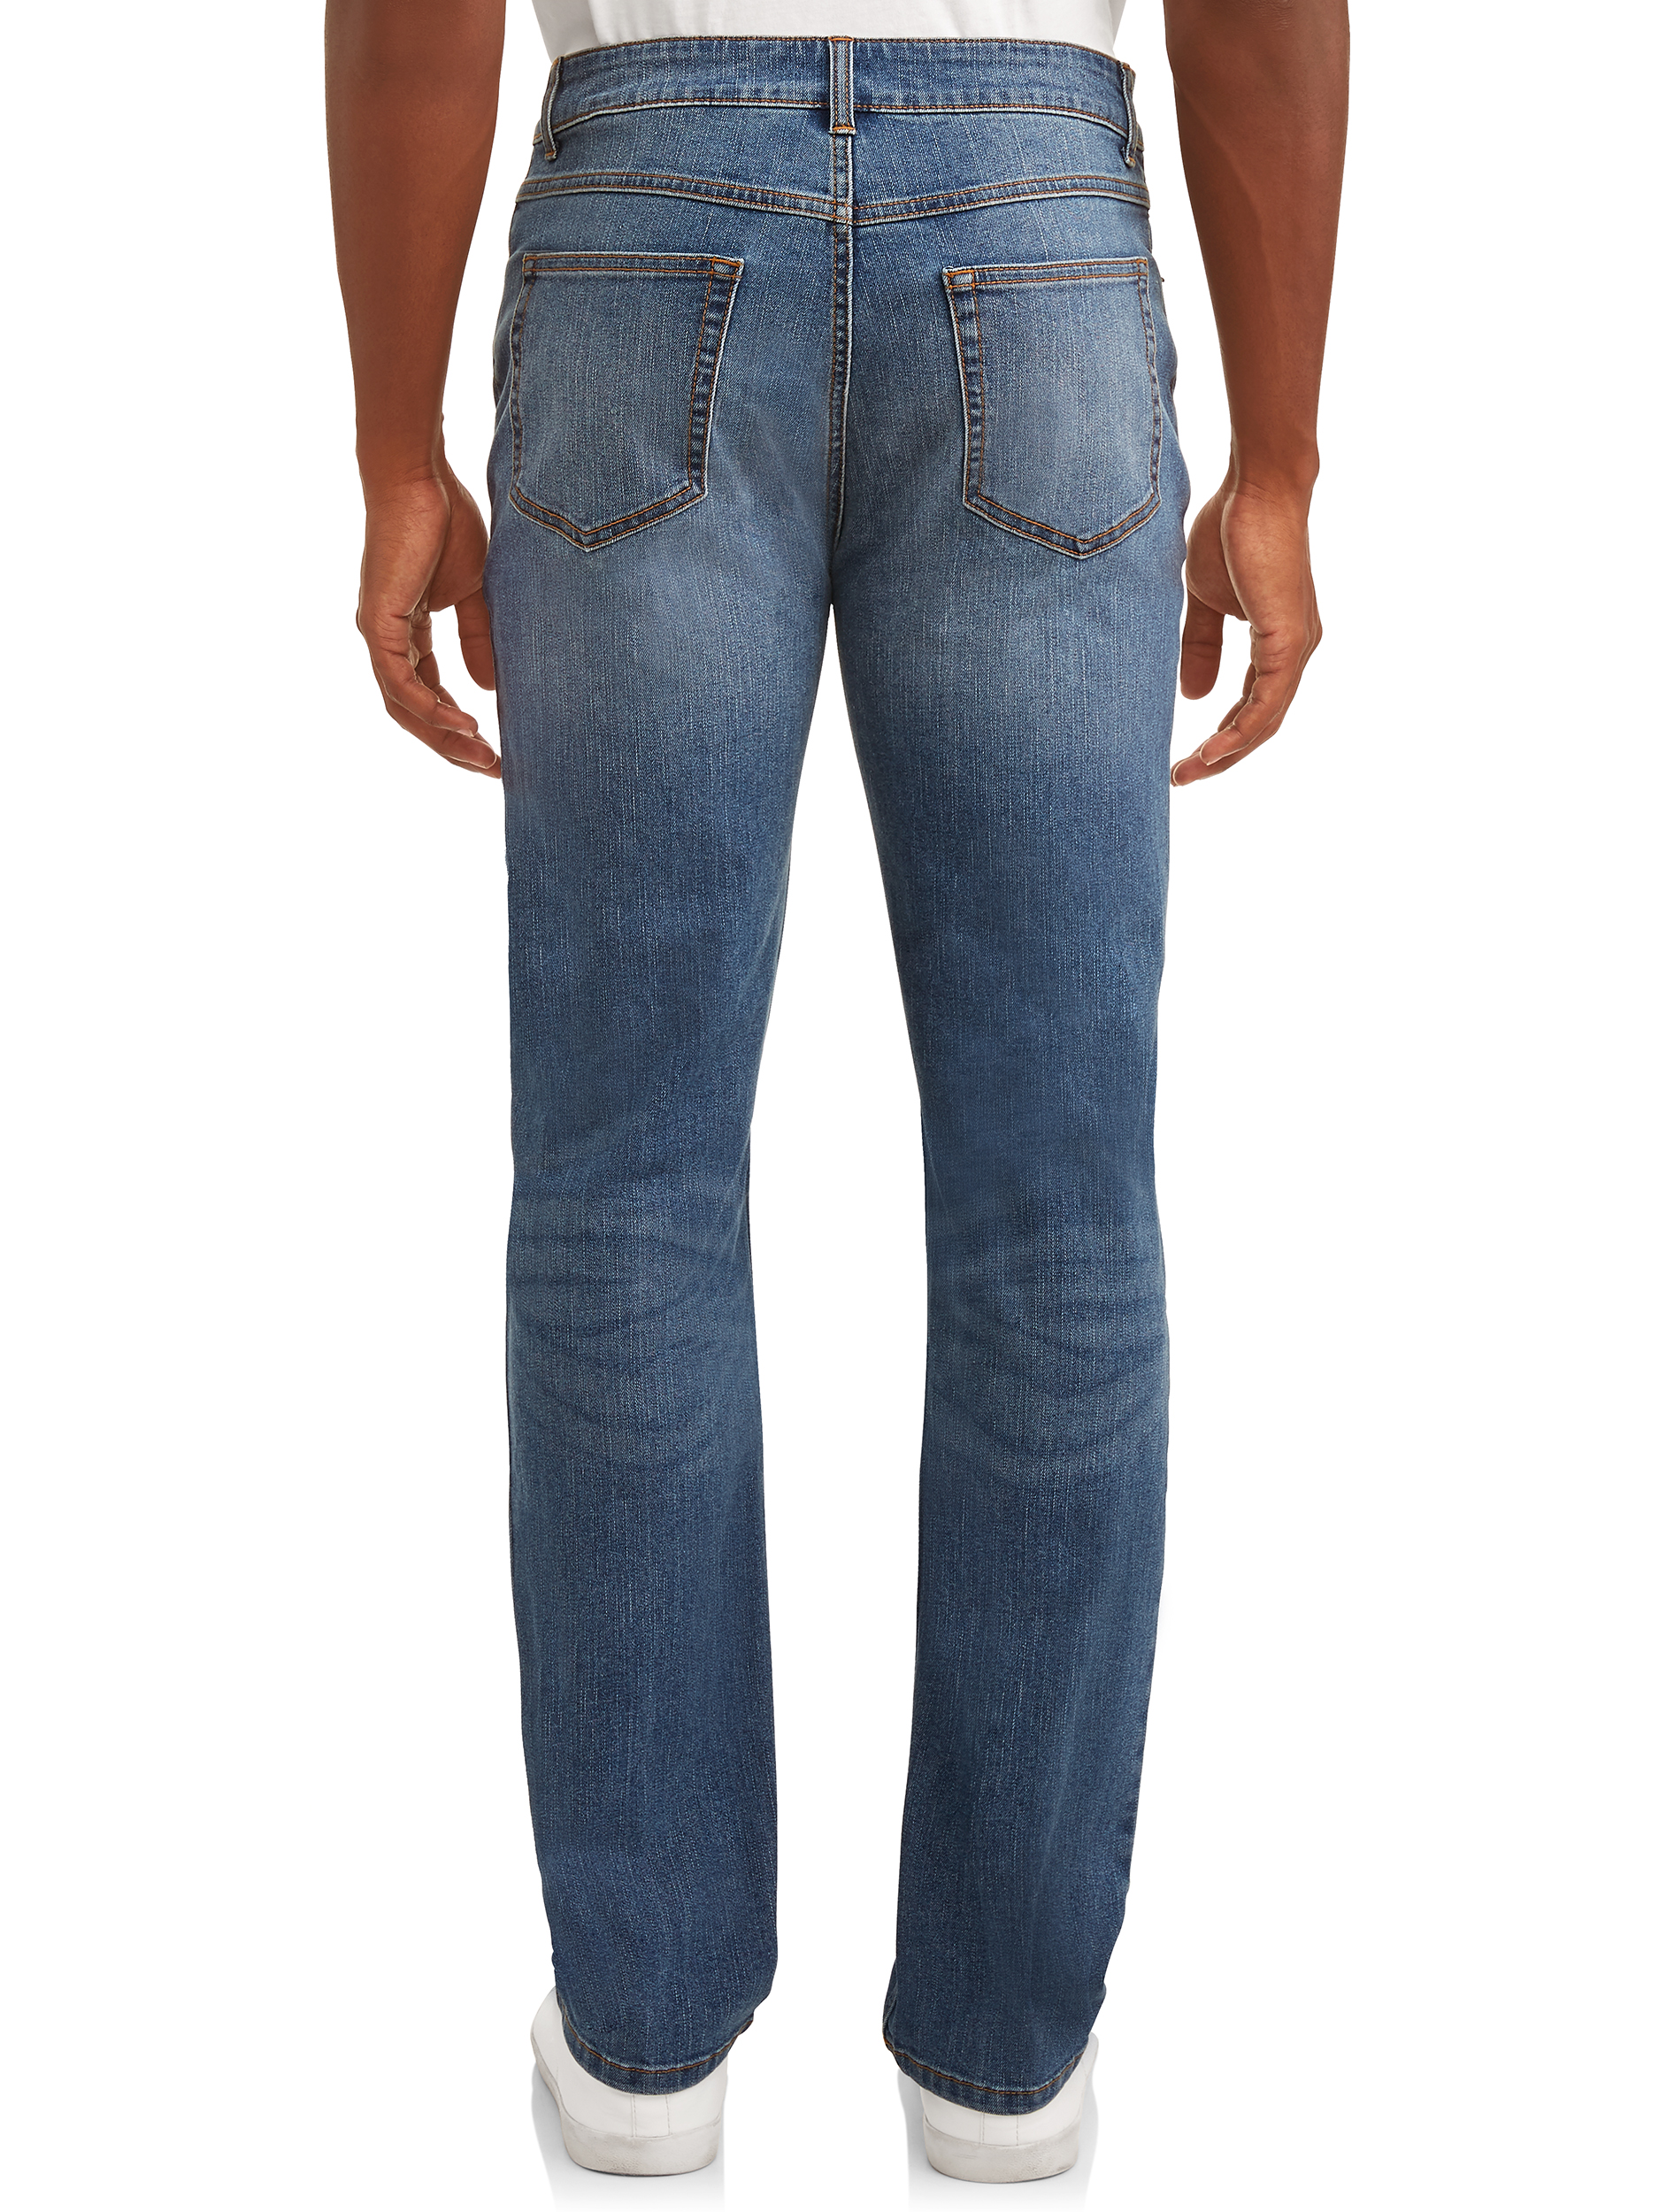 George Men's Premium Denim Jeans - image 3 of 4